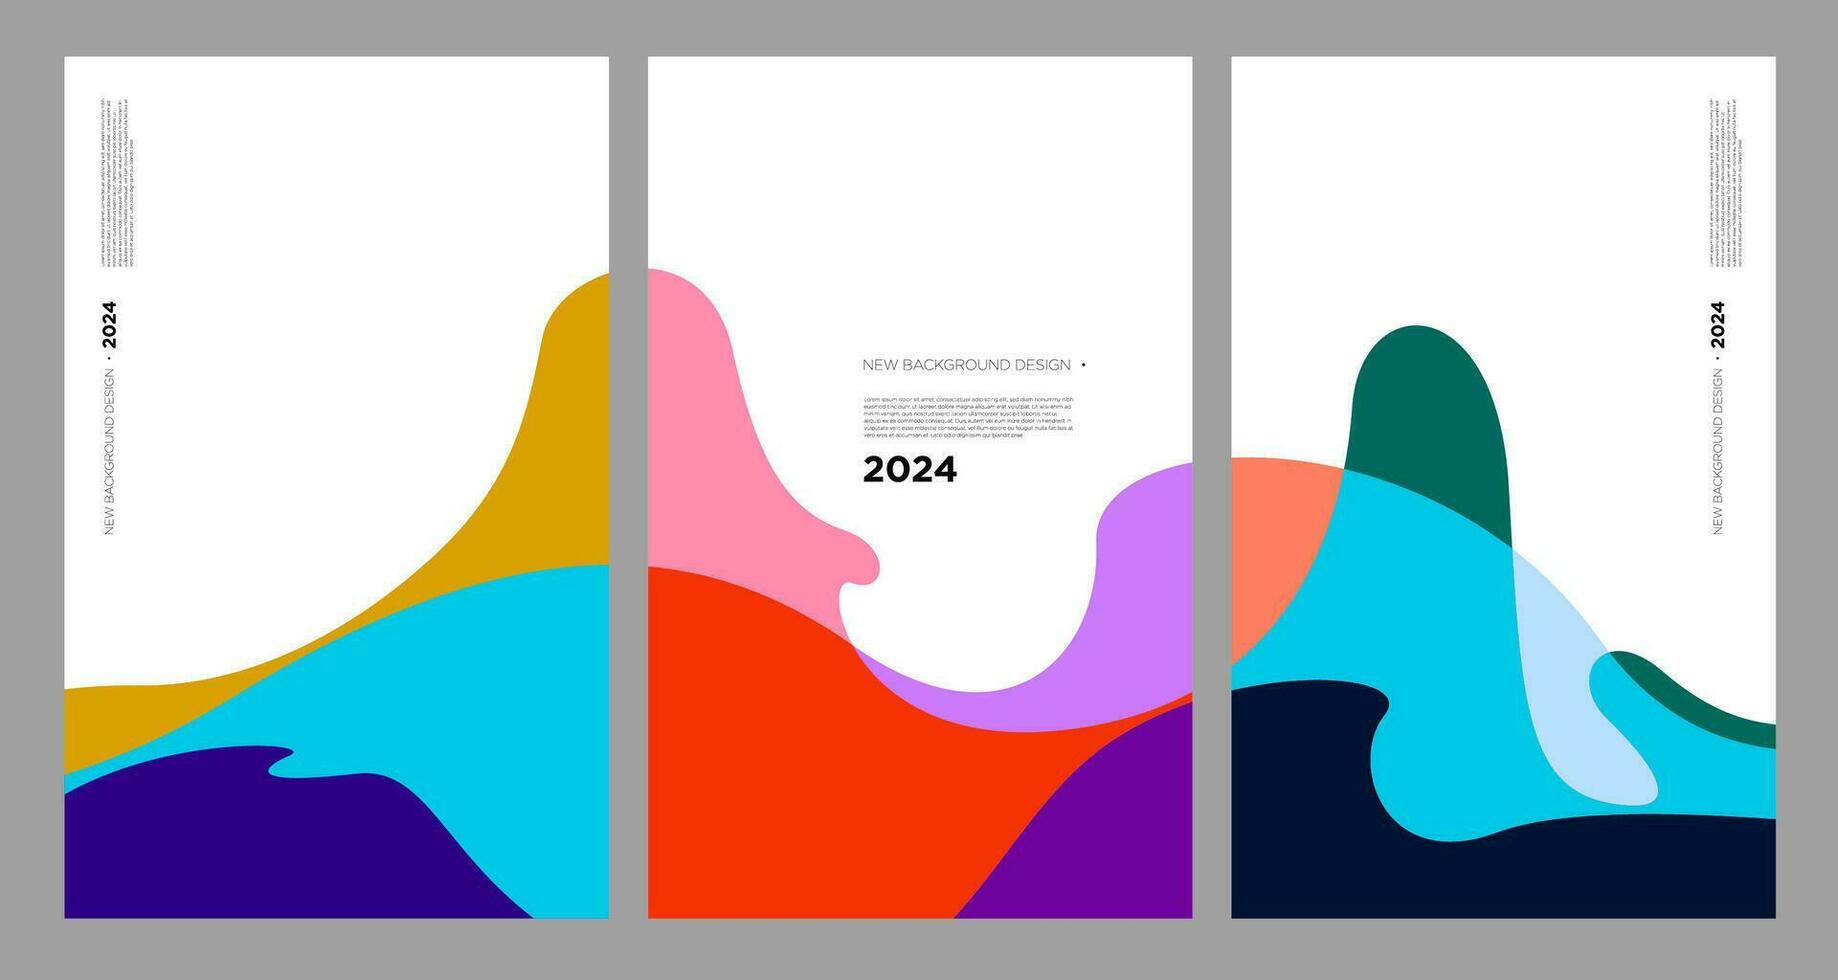 Vektor Illustration bunt Flüssigkeit und Flüssigkeit abstrakt zum Banner Vorlage 2024